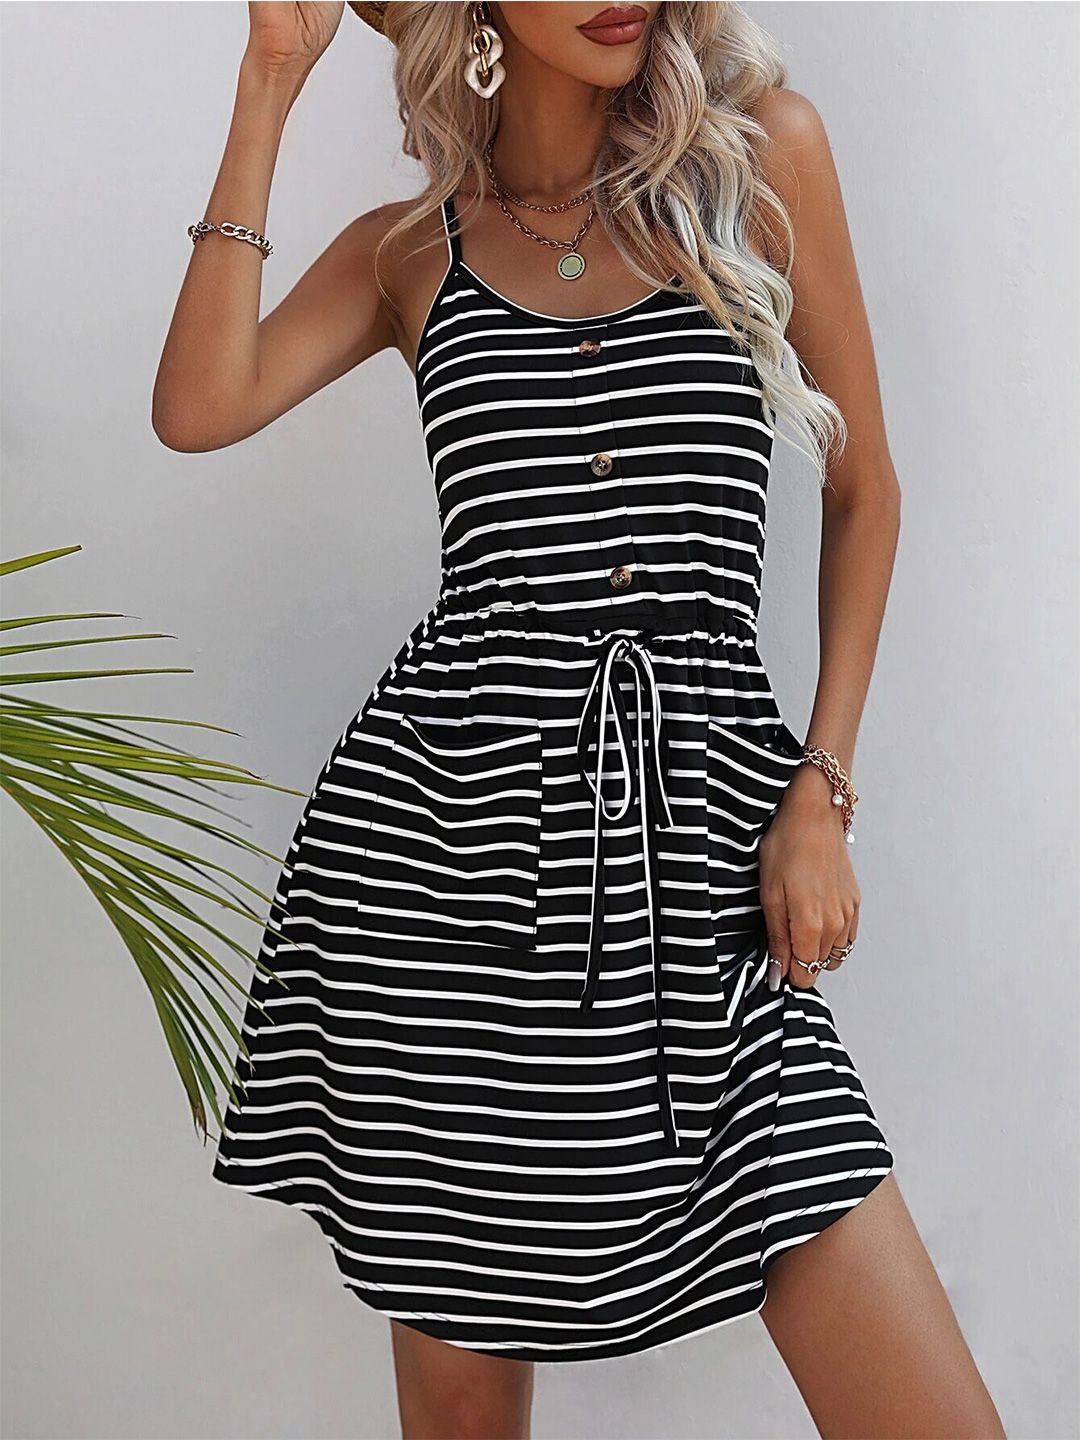 bostreet black striped fit & flare dress